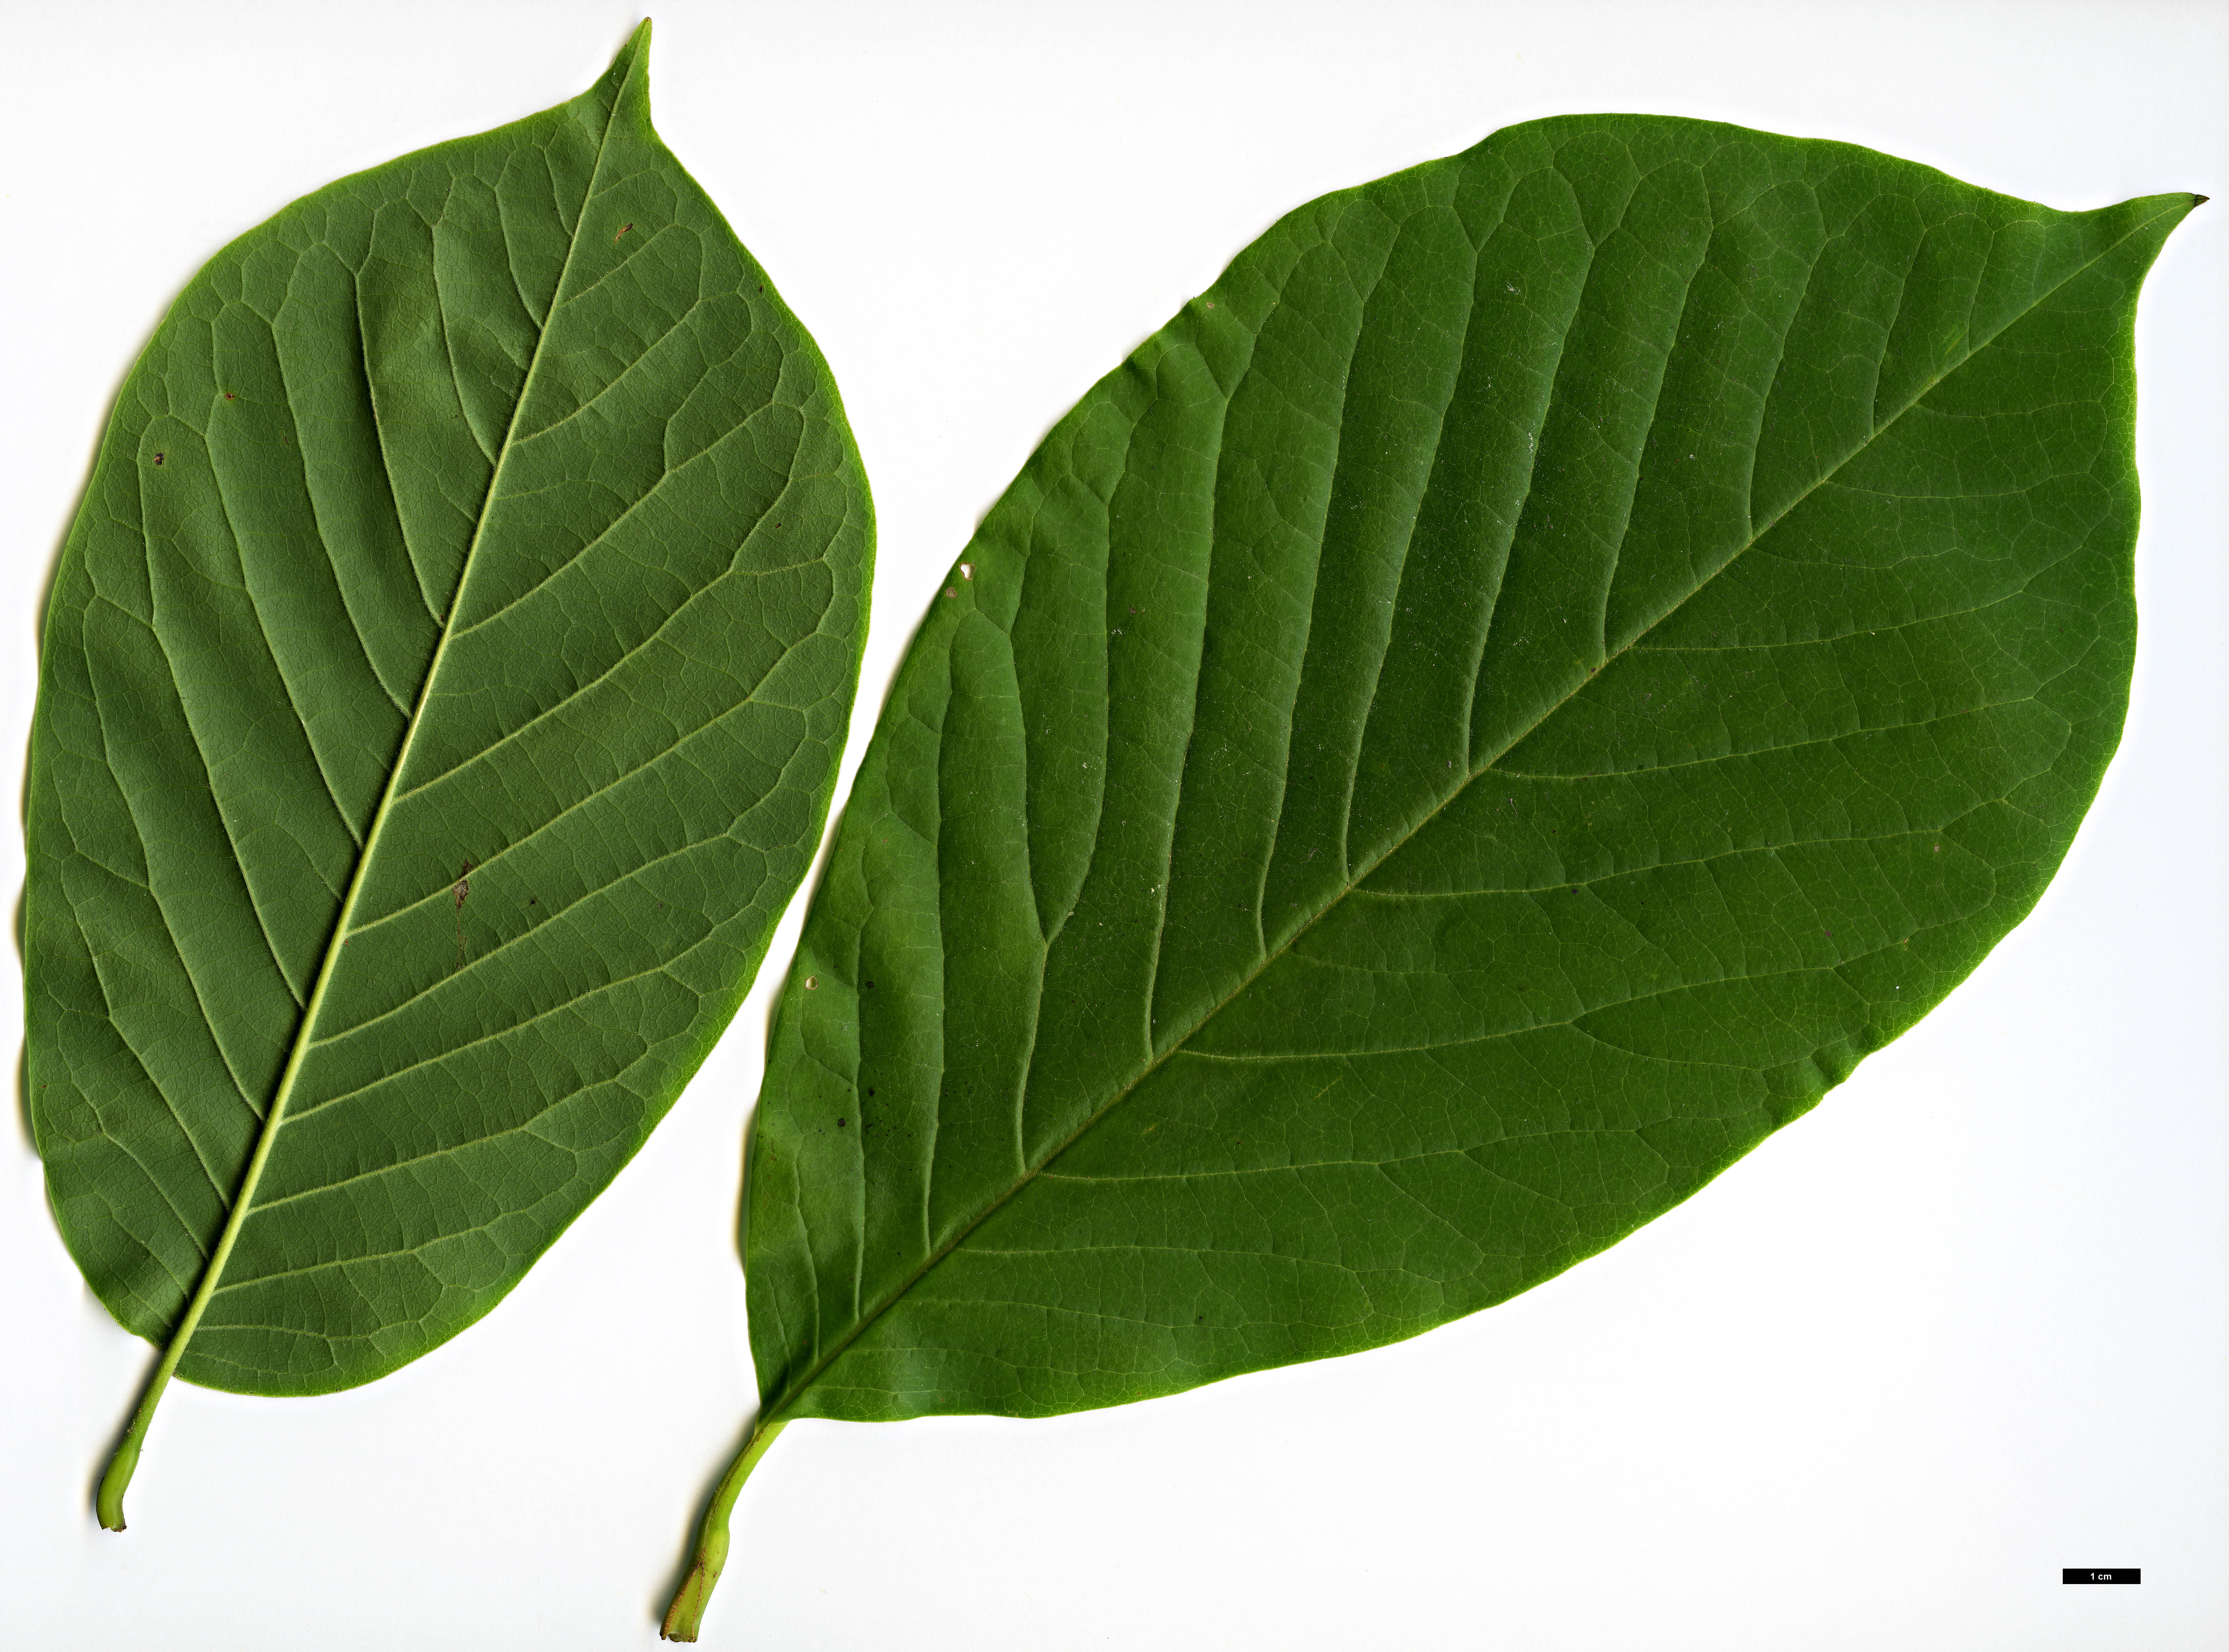 High resolution image: Family: Magnoliaceae - Genus: Magnolia - Taxon: ×veitchii - SpeciesSub: 'Peter Veitch' (M.campbellii × M.denudata)